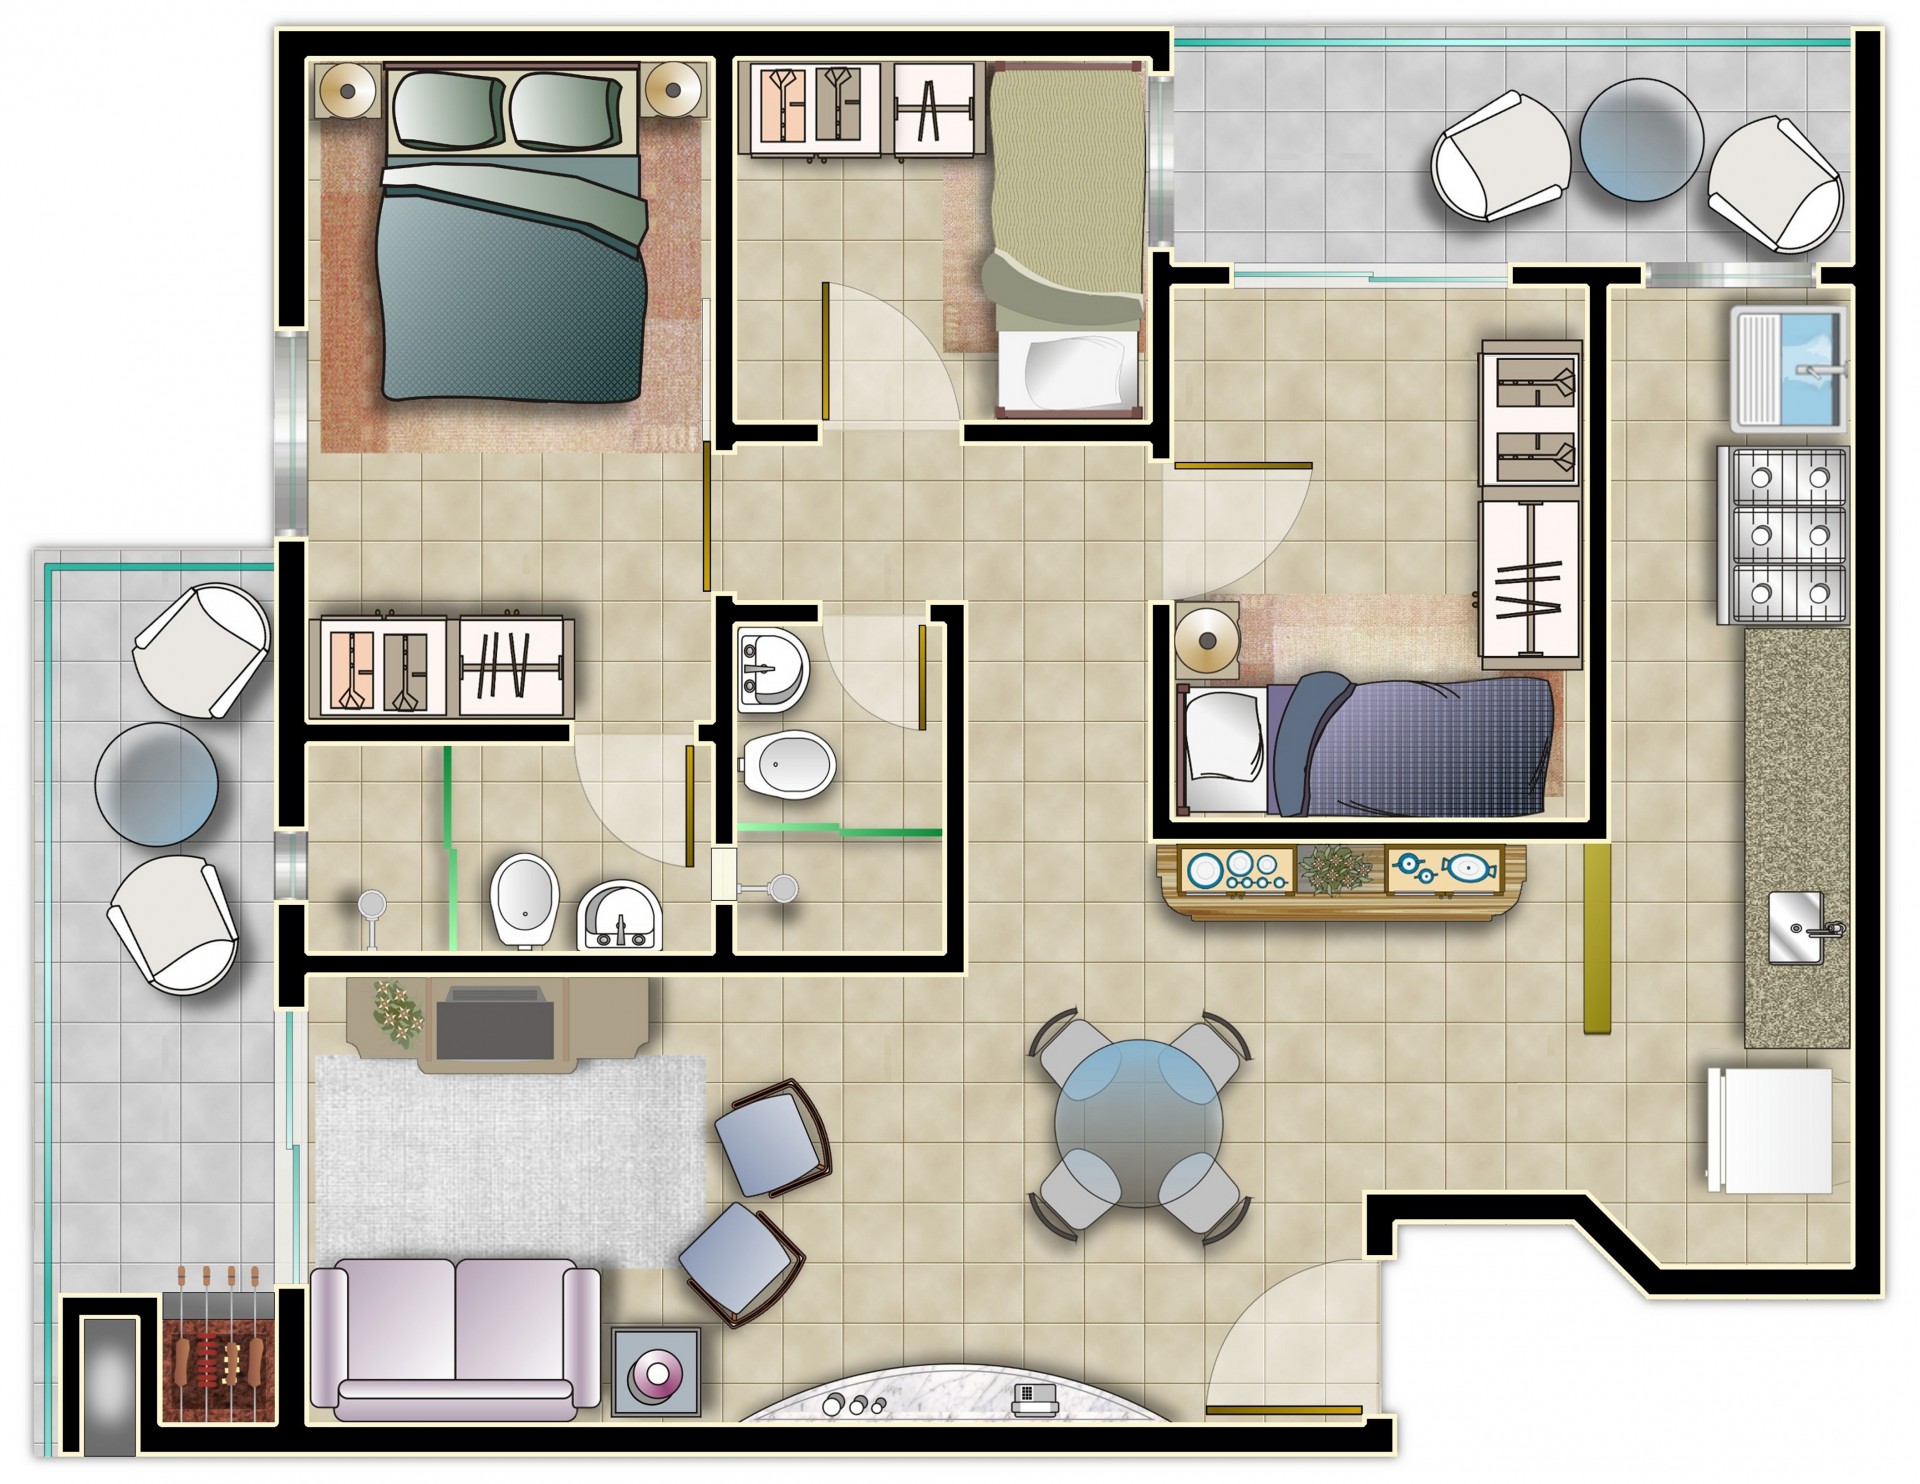 Apartamento com 3 dormitórios - Frente